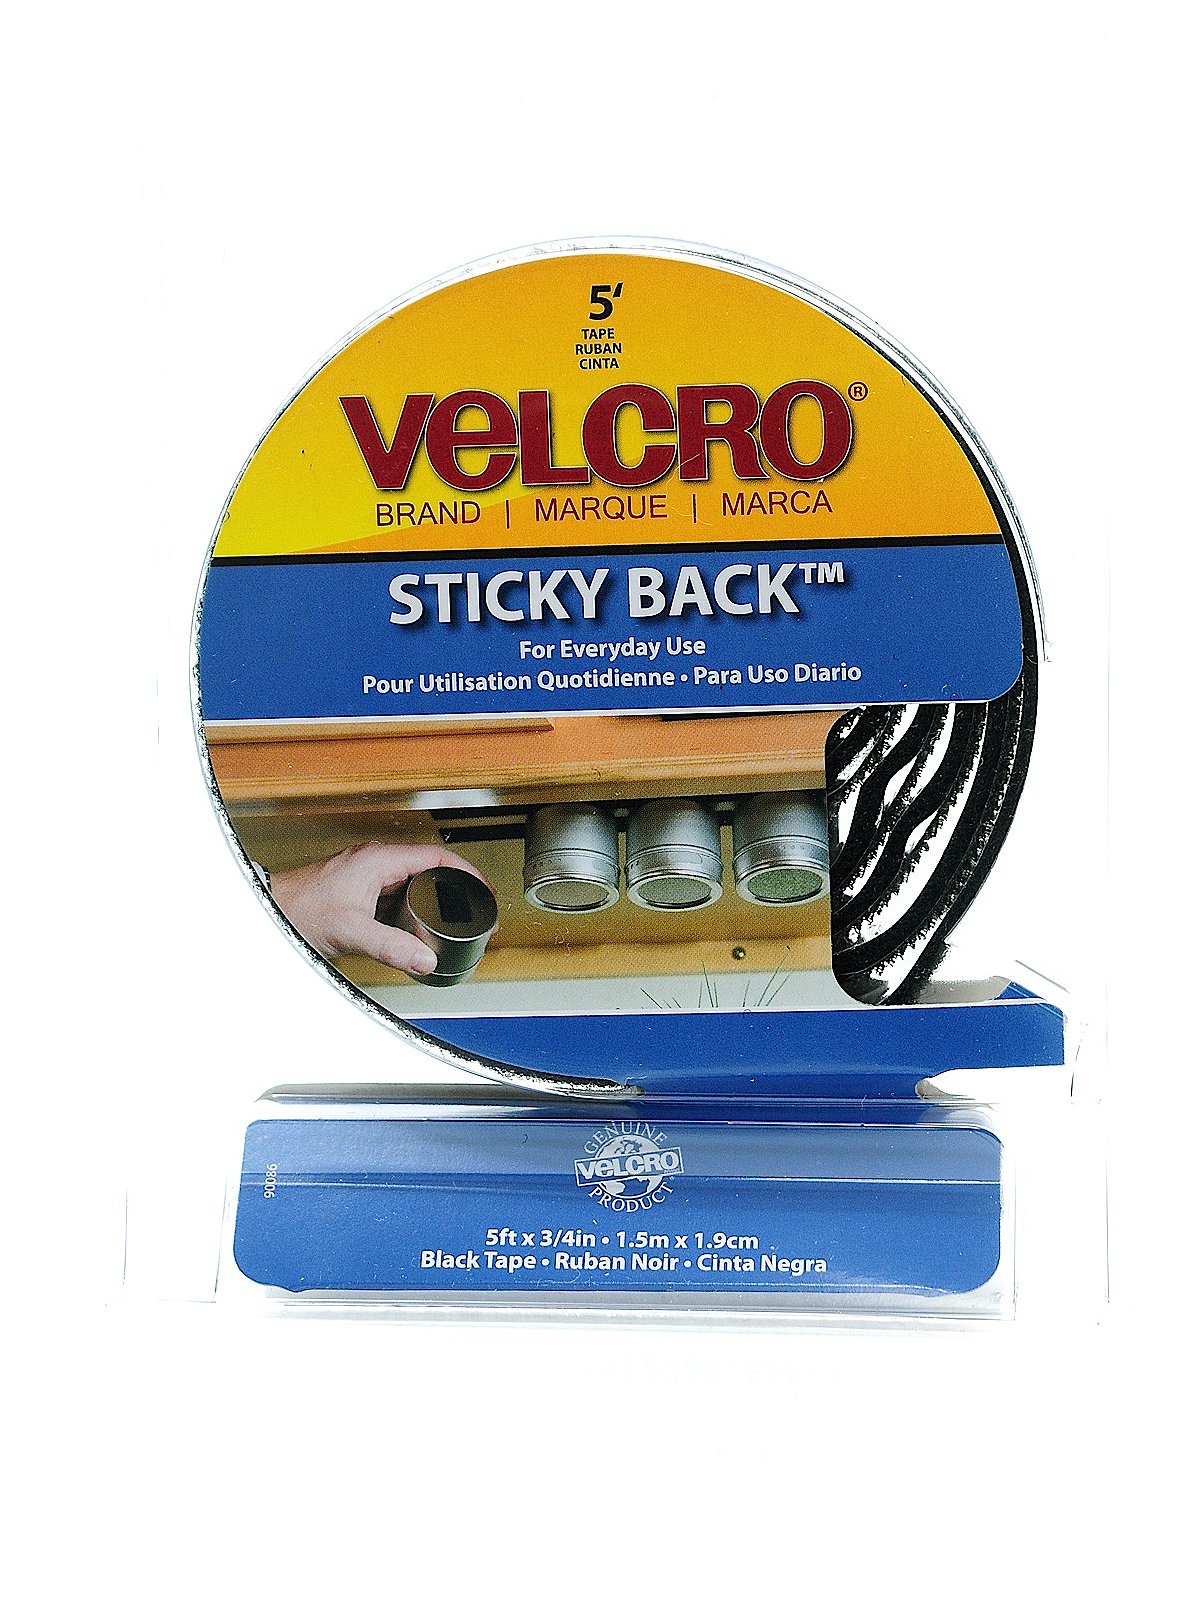 VELCRO Brand Industrial Strength Tape, 15ft x 2in Roll, White - VEK90198 